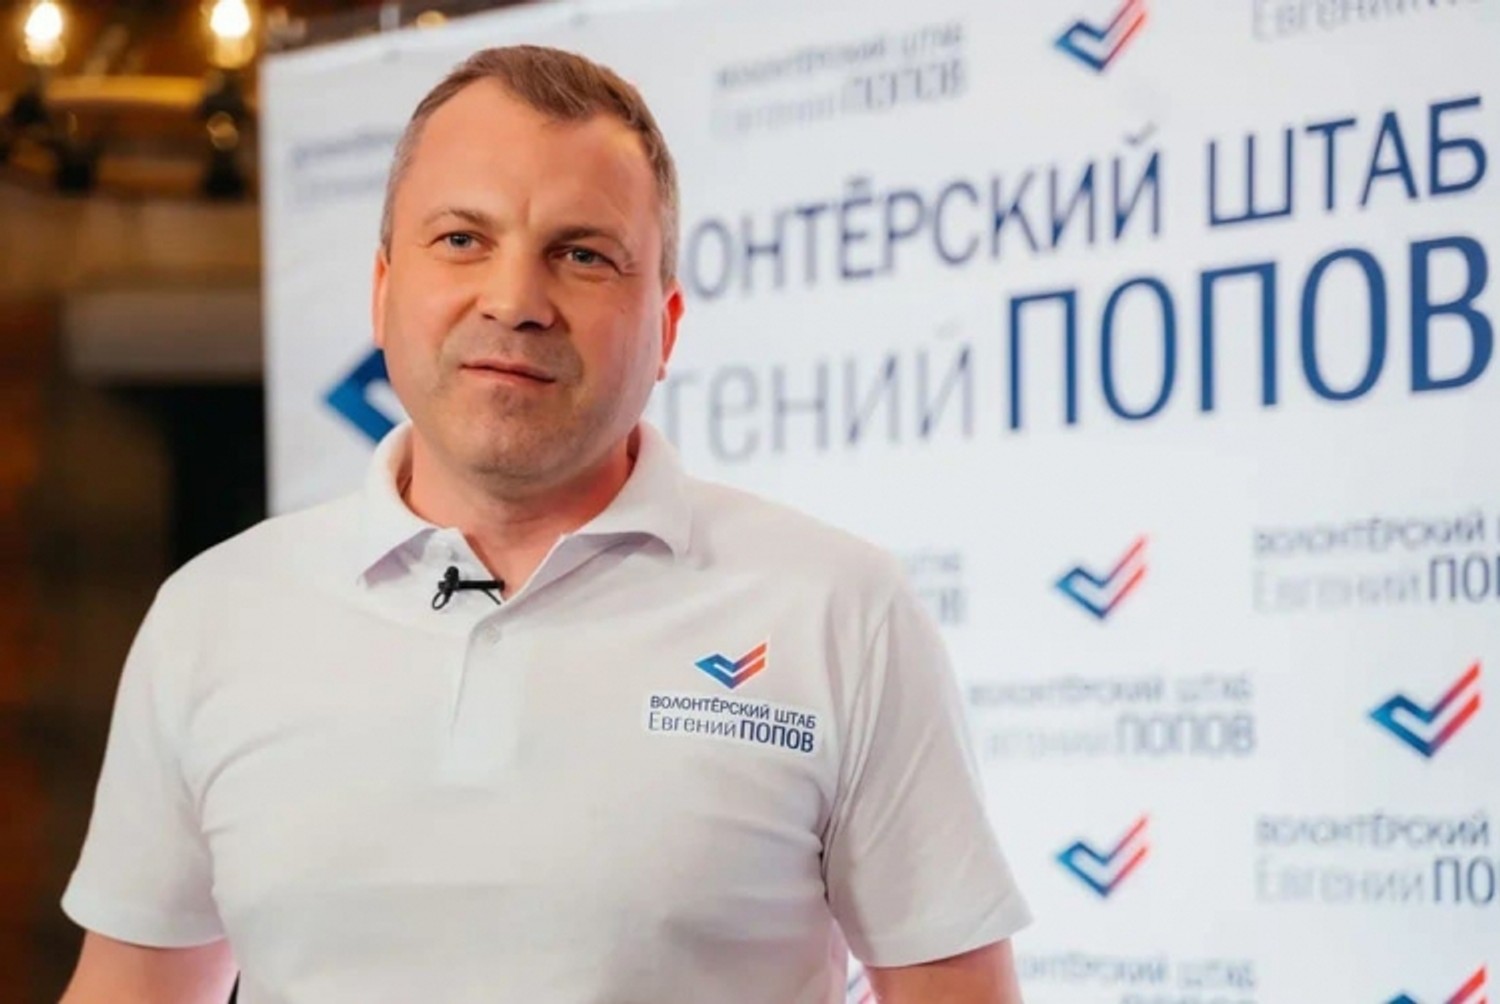 Московський мундеп поскаржився в СК і МВС на телеведучого Попова через наклеп